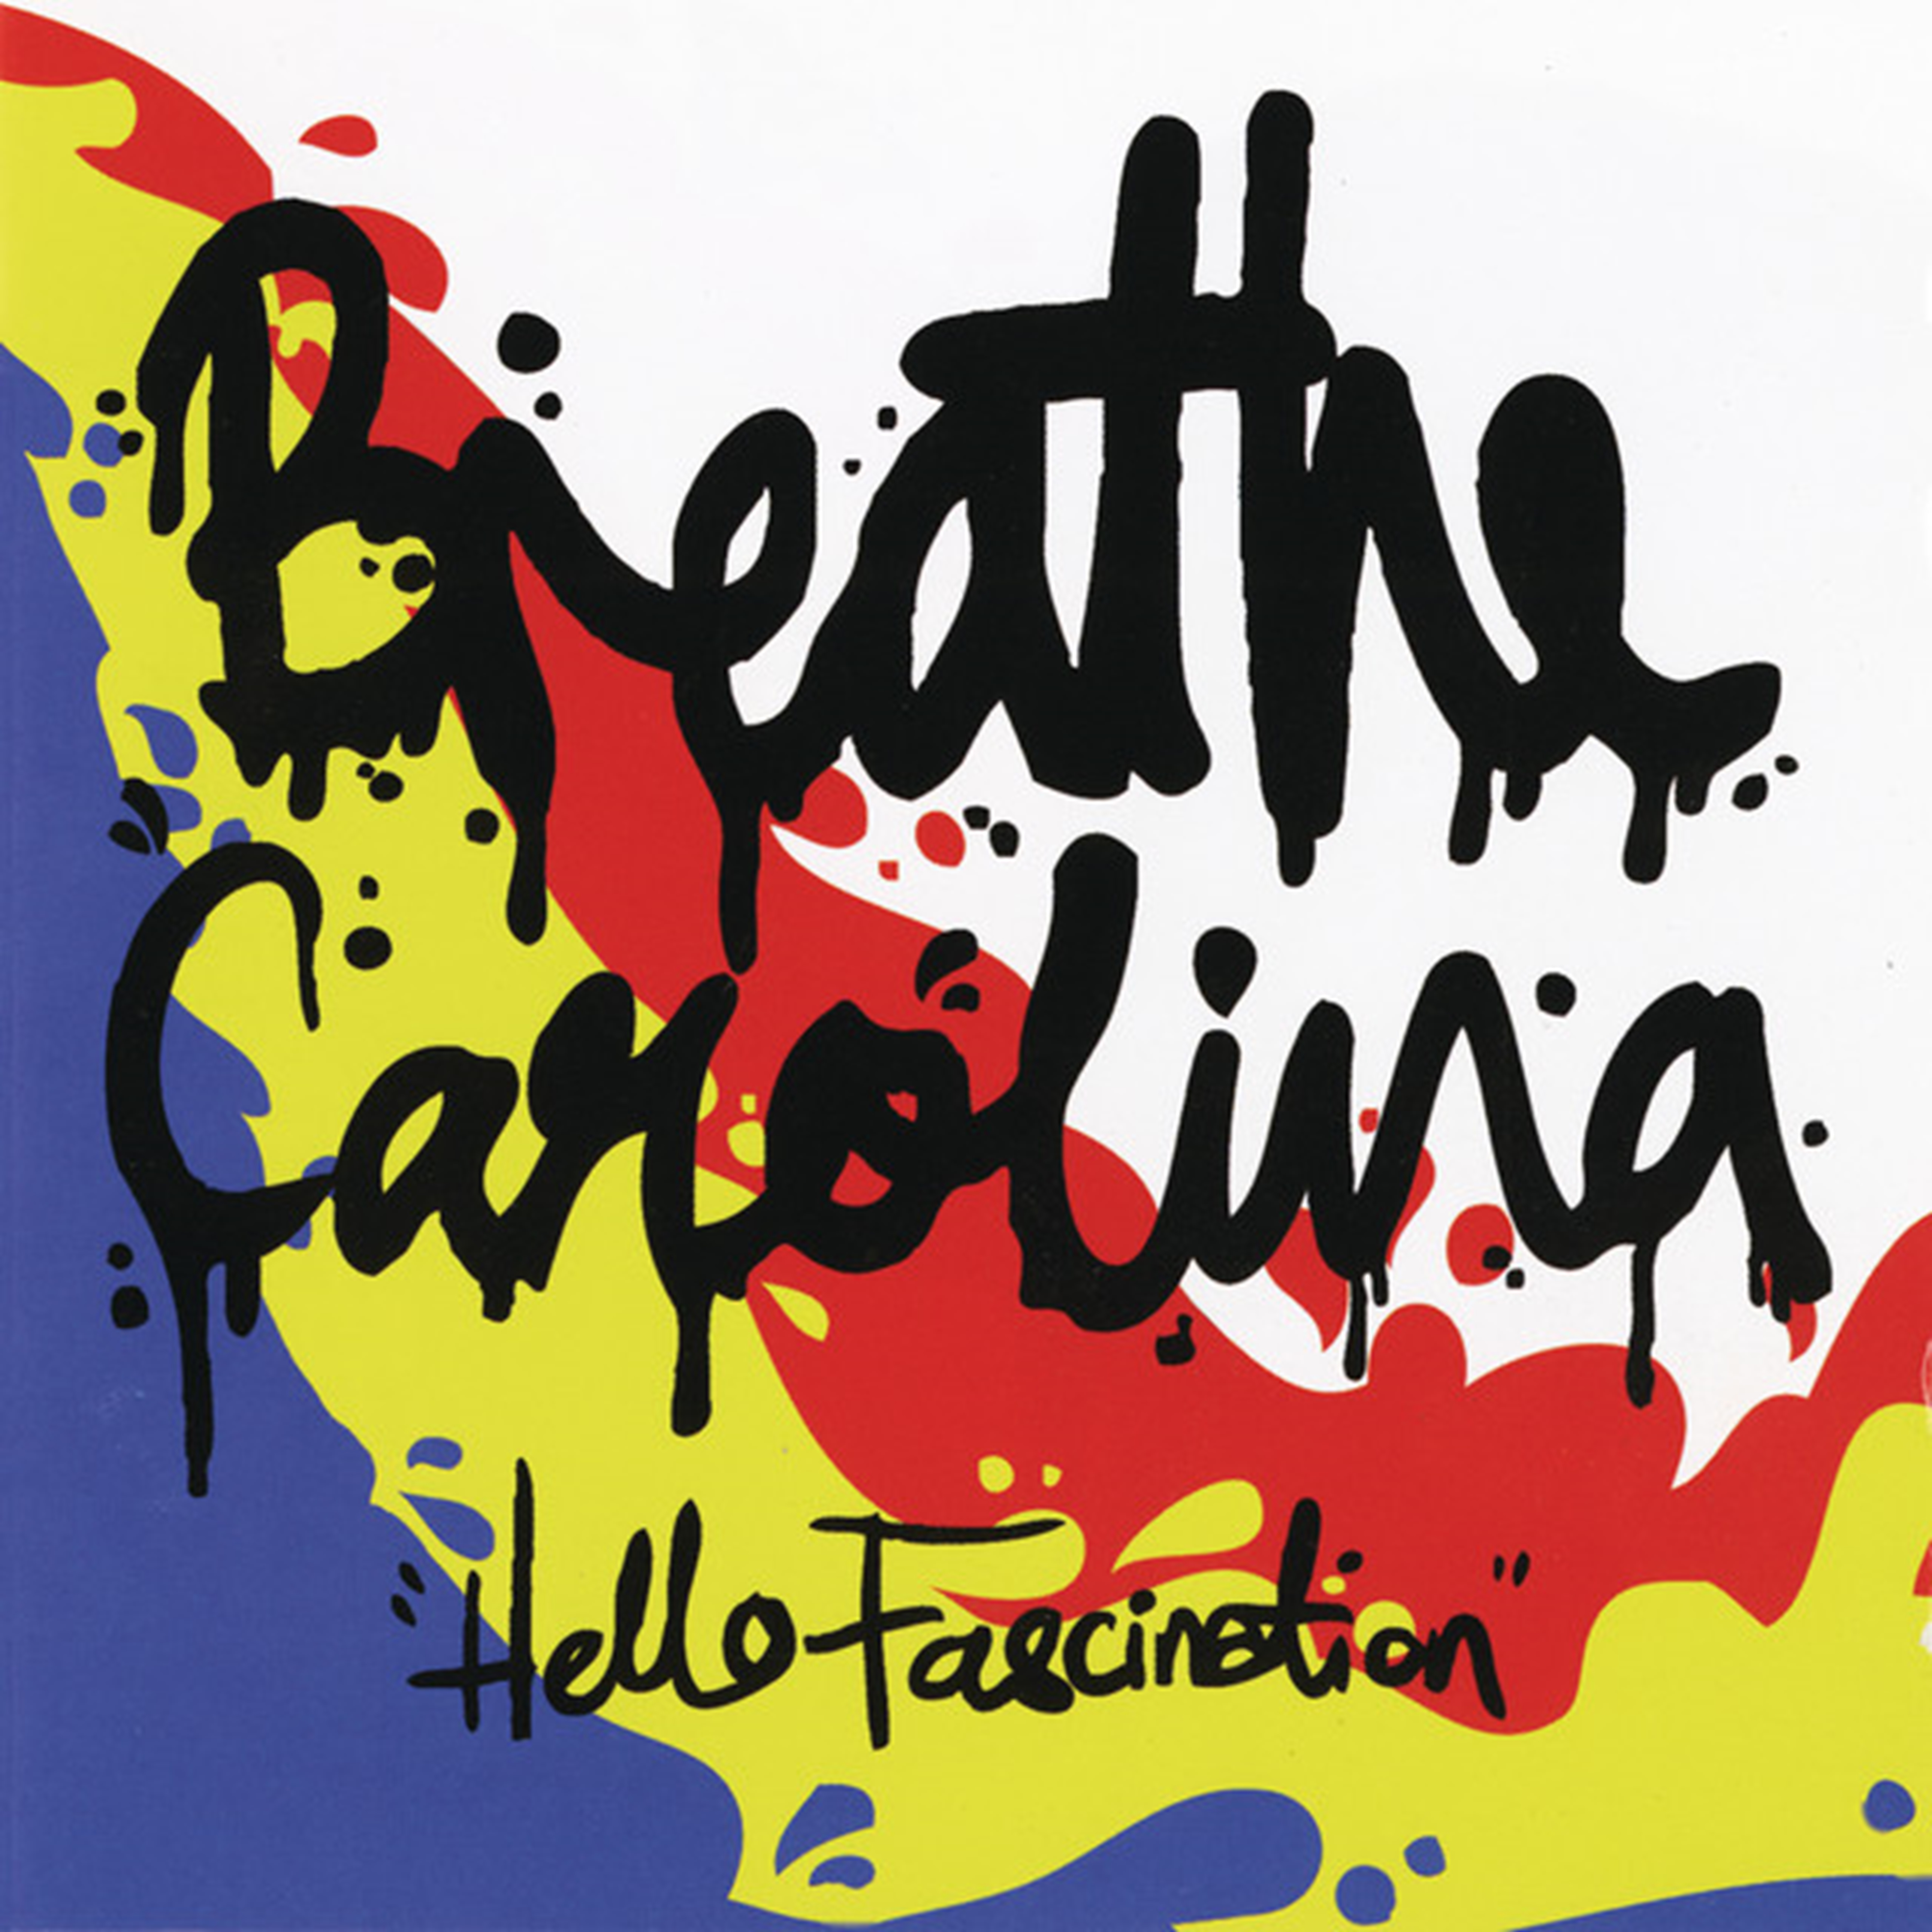 Breathe Carolina I.D.G.A.F cover artwork